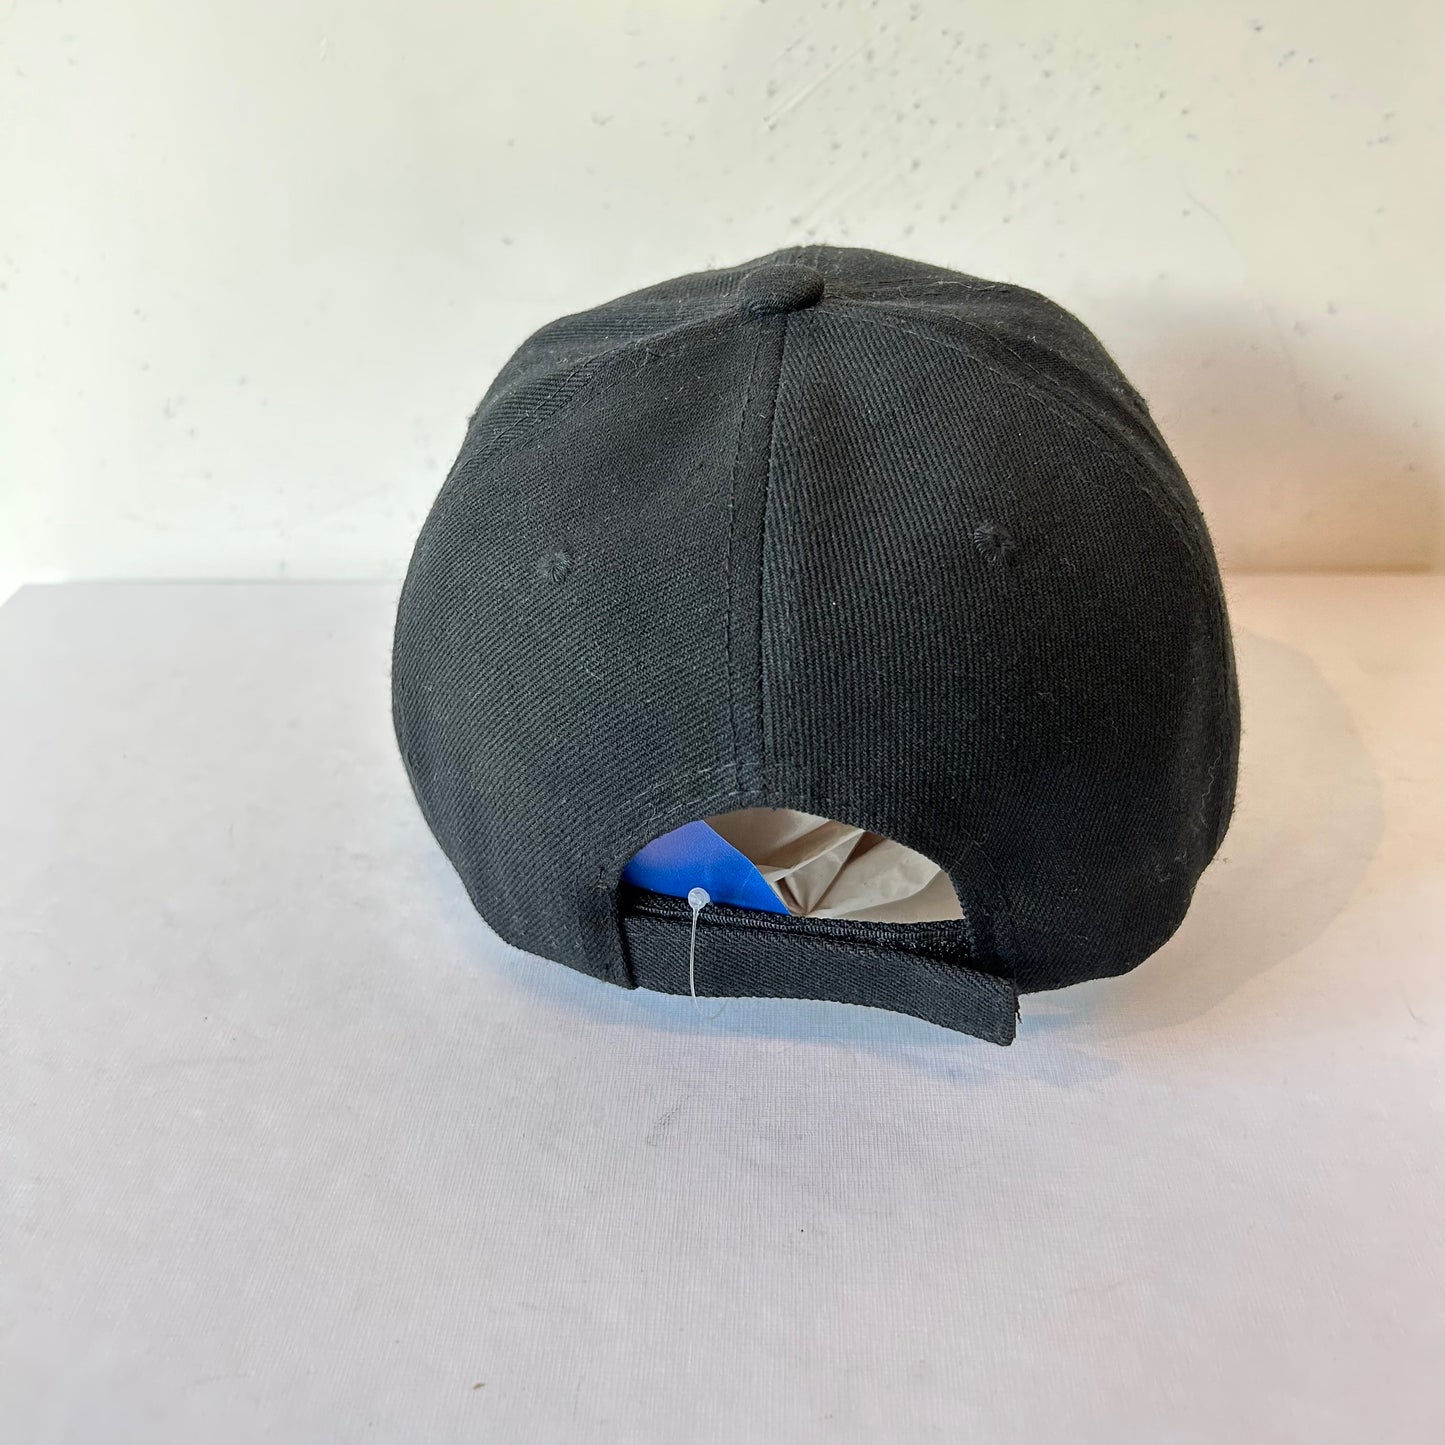 1 Size Black Steelers Hat